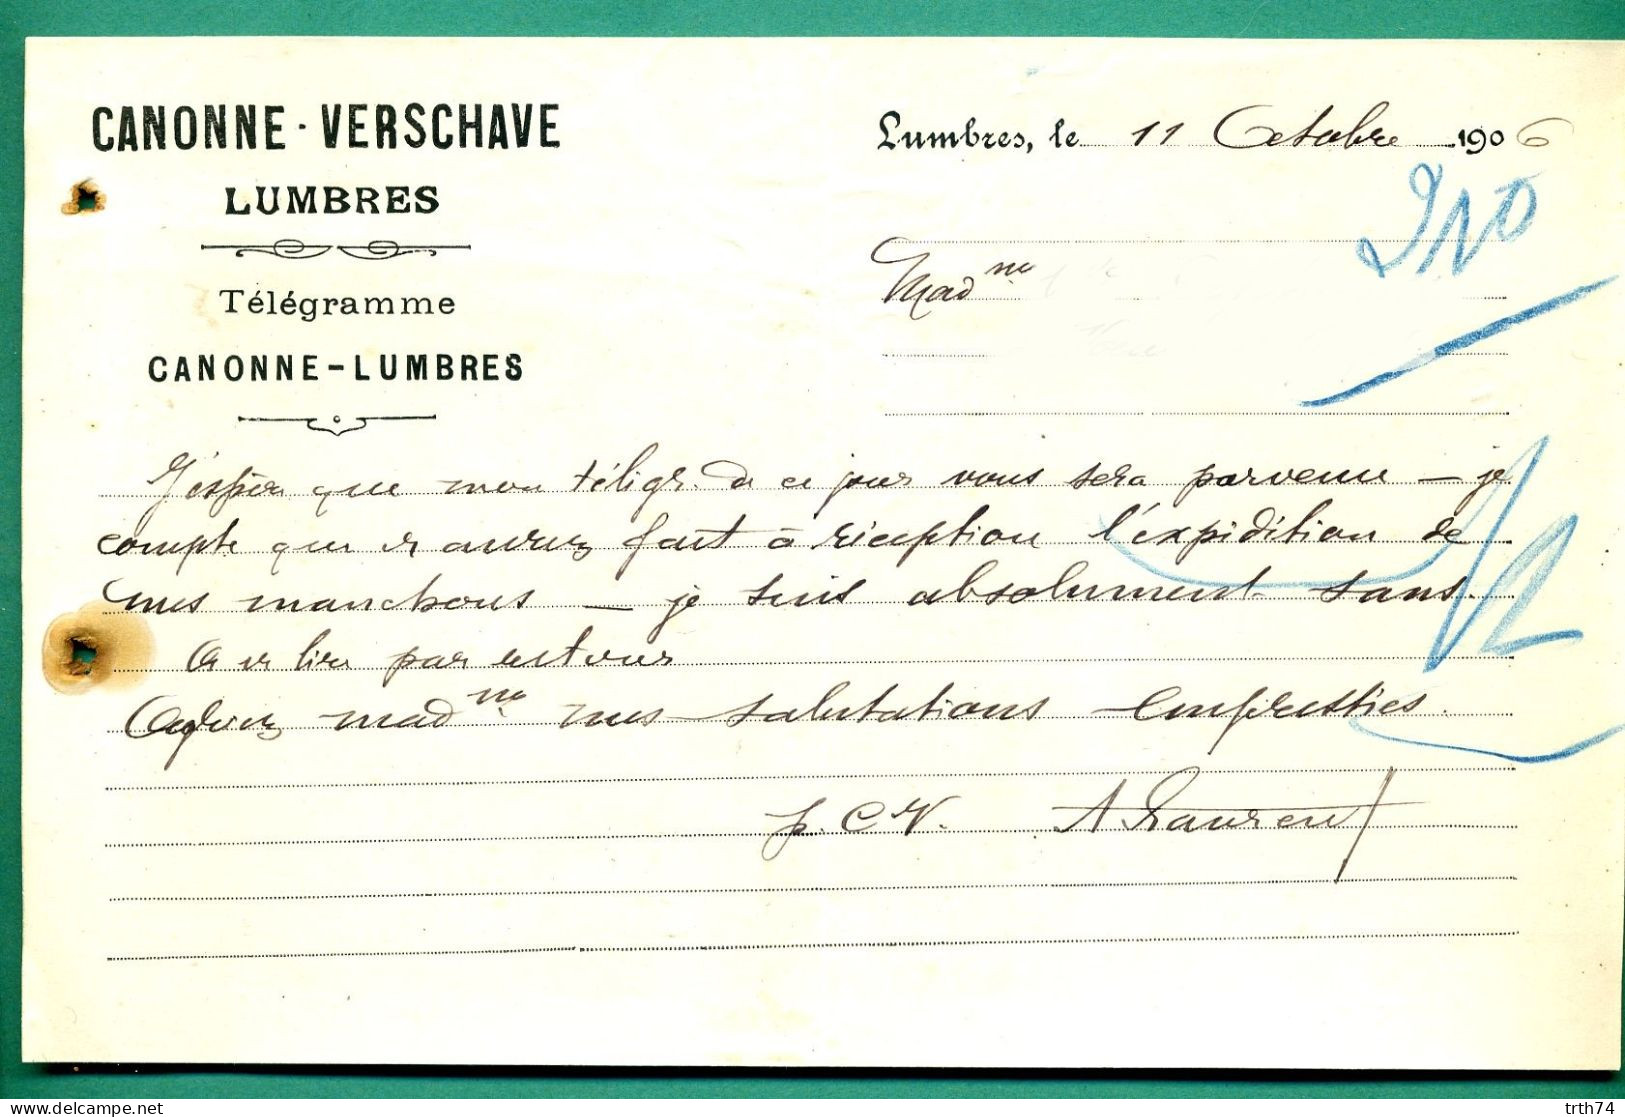 62 Lumbres Canonne Verschare 11 Octobre 1906 - Druck & Papierwaren